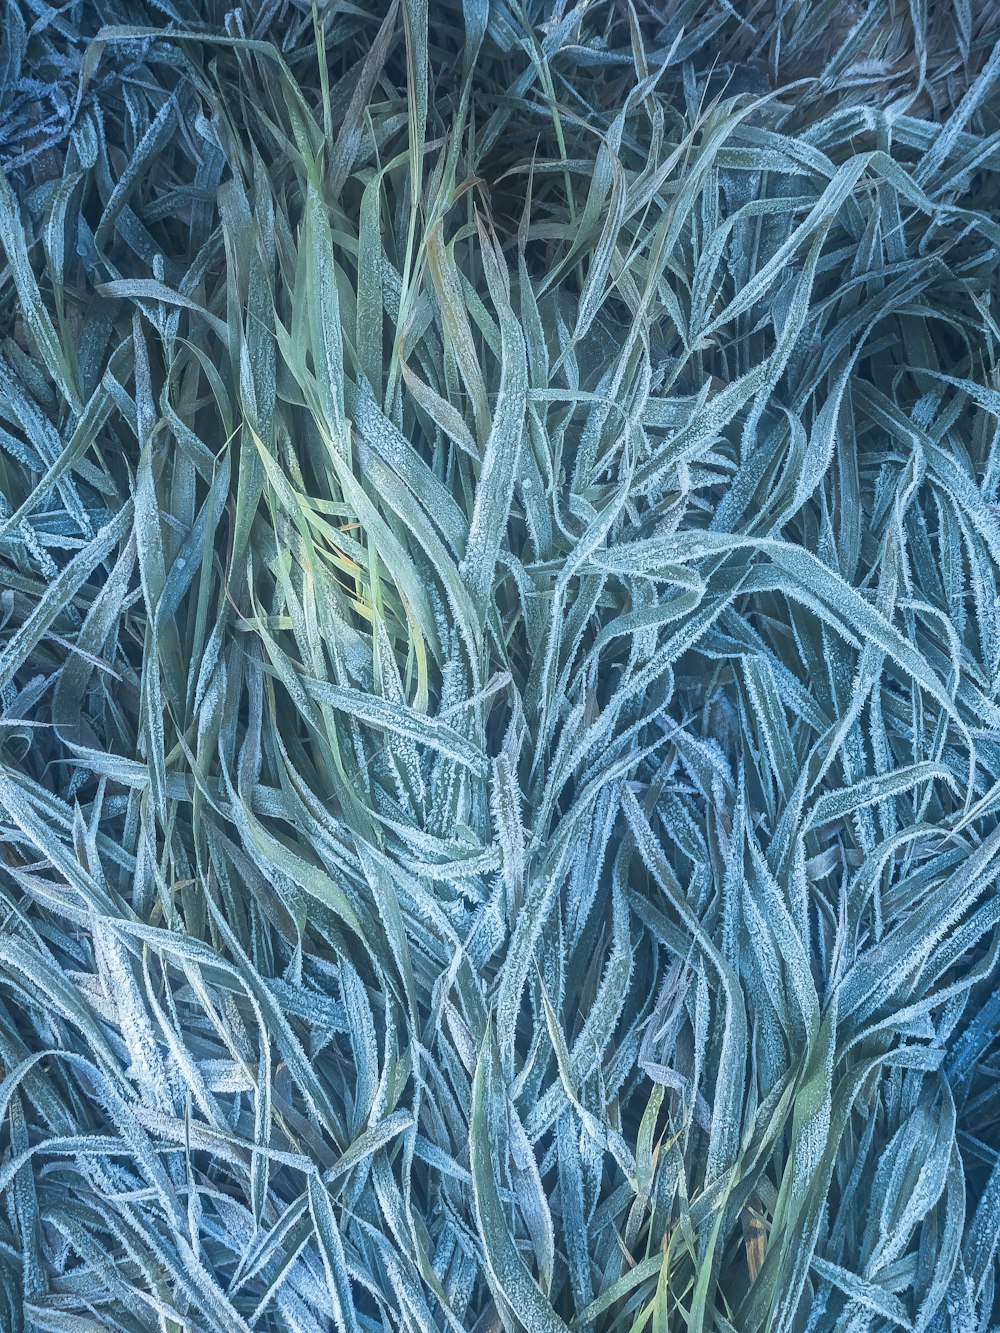 a close up of a bunch of blue grass